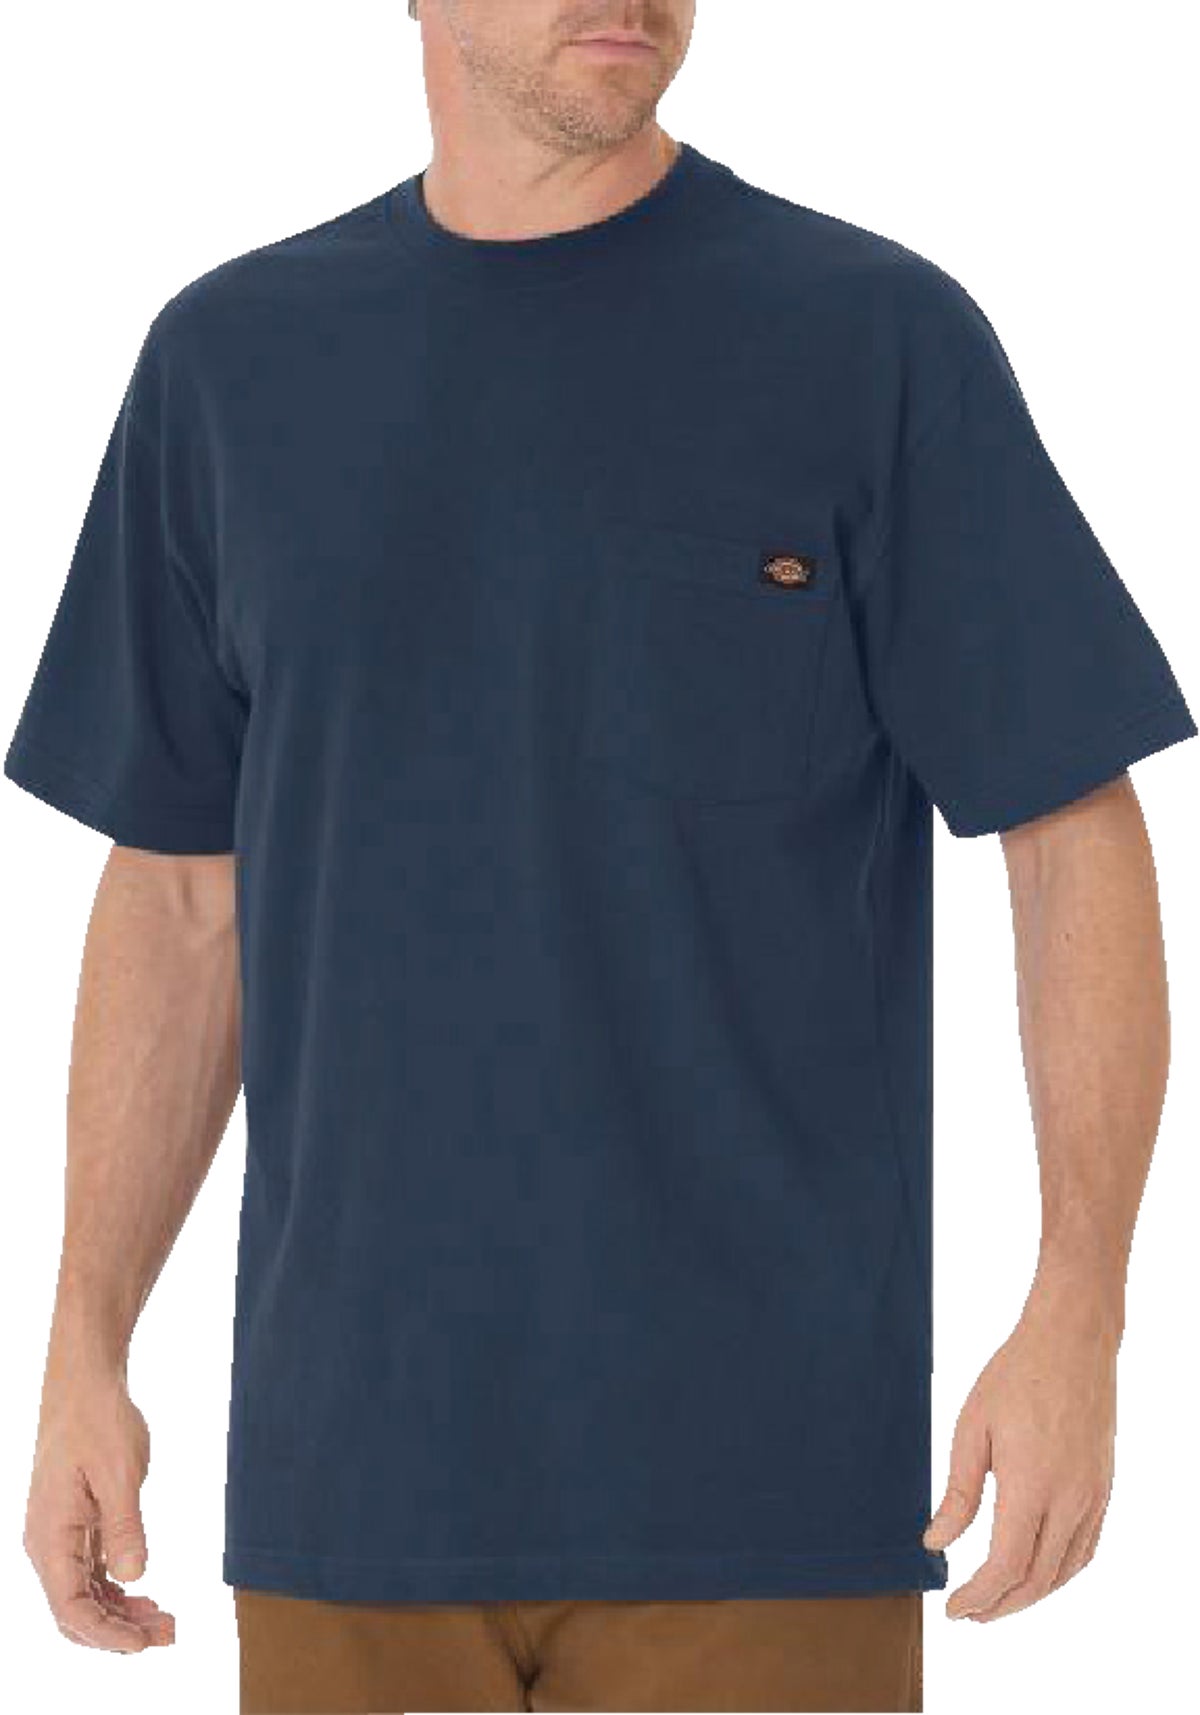 Buy Dickies Pocket T-Shirt XL, Dark Navy, Short Sleeve